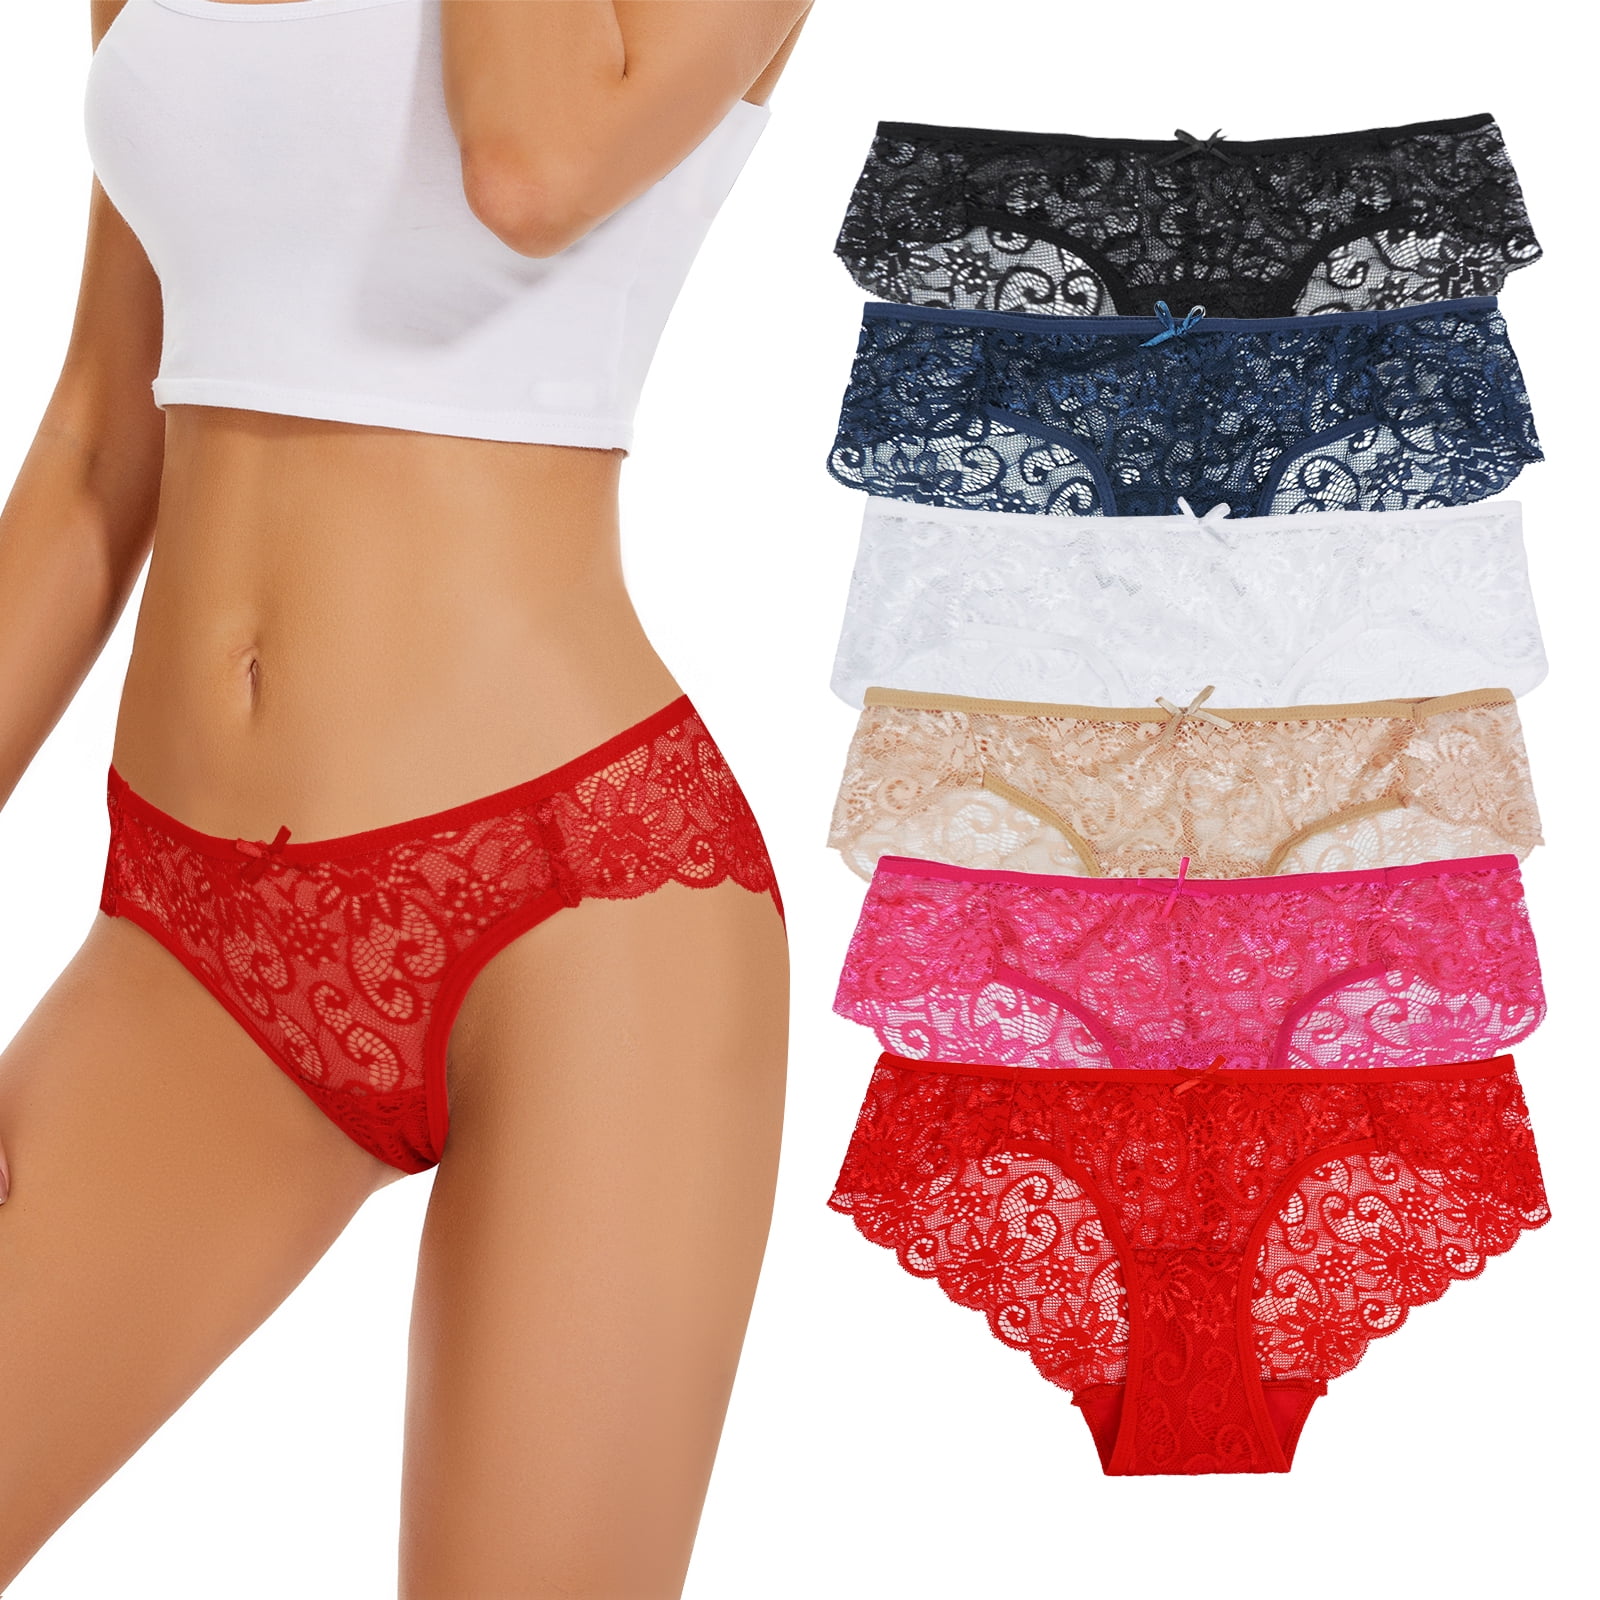 Sunm Boutique Lace Panties Cotton Underwear for Women Plus Size